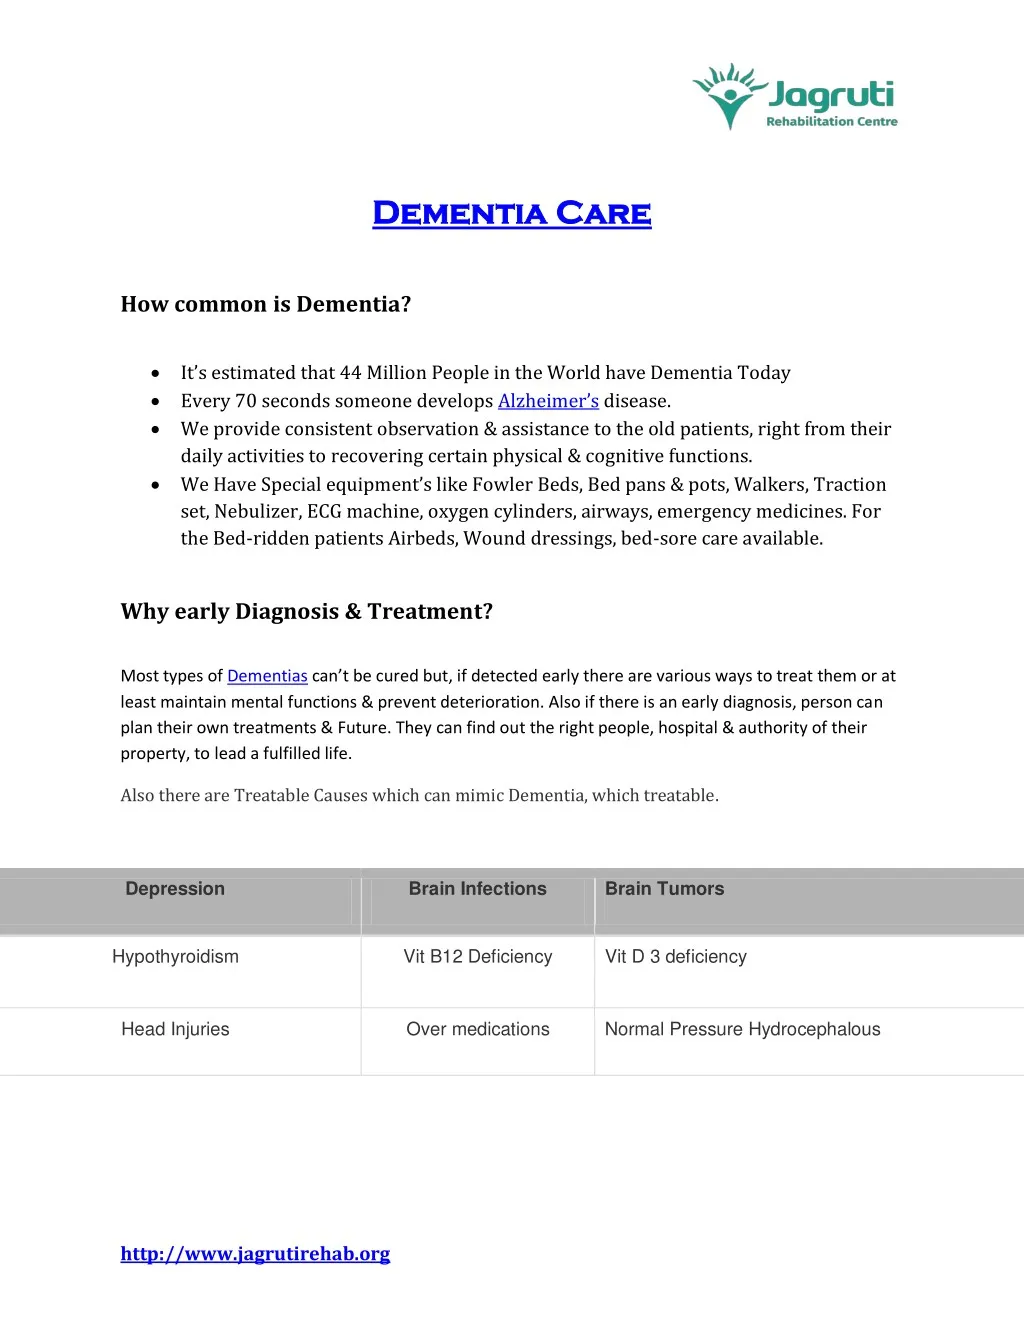 dementia care dementia care